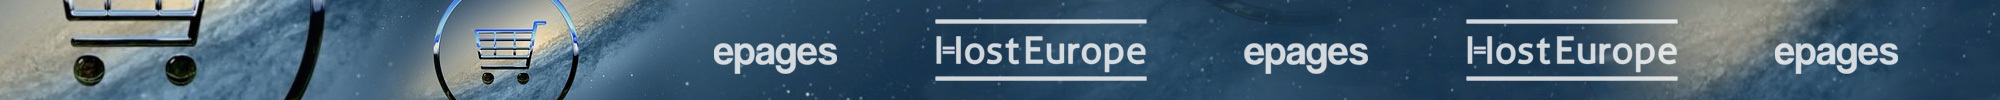 Hilfe und Support für Optimierung Deines HostEurope epages 6 base Shops